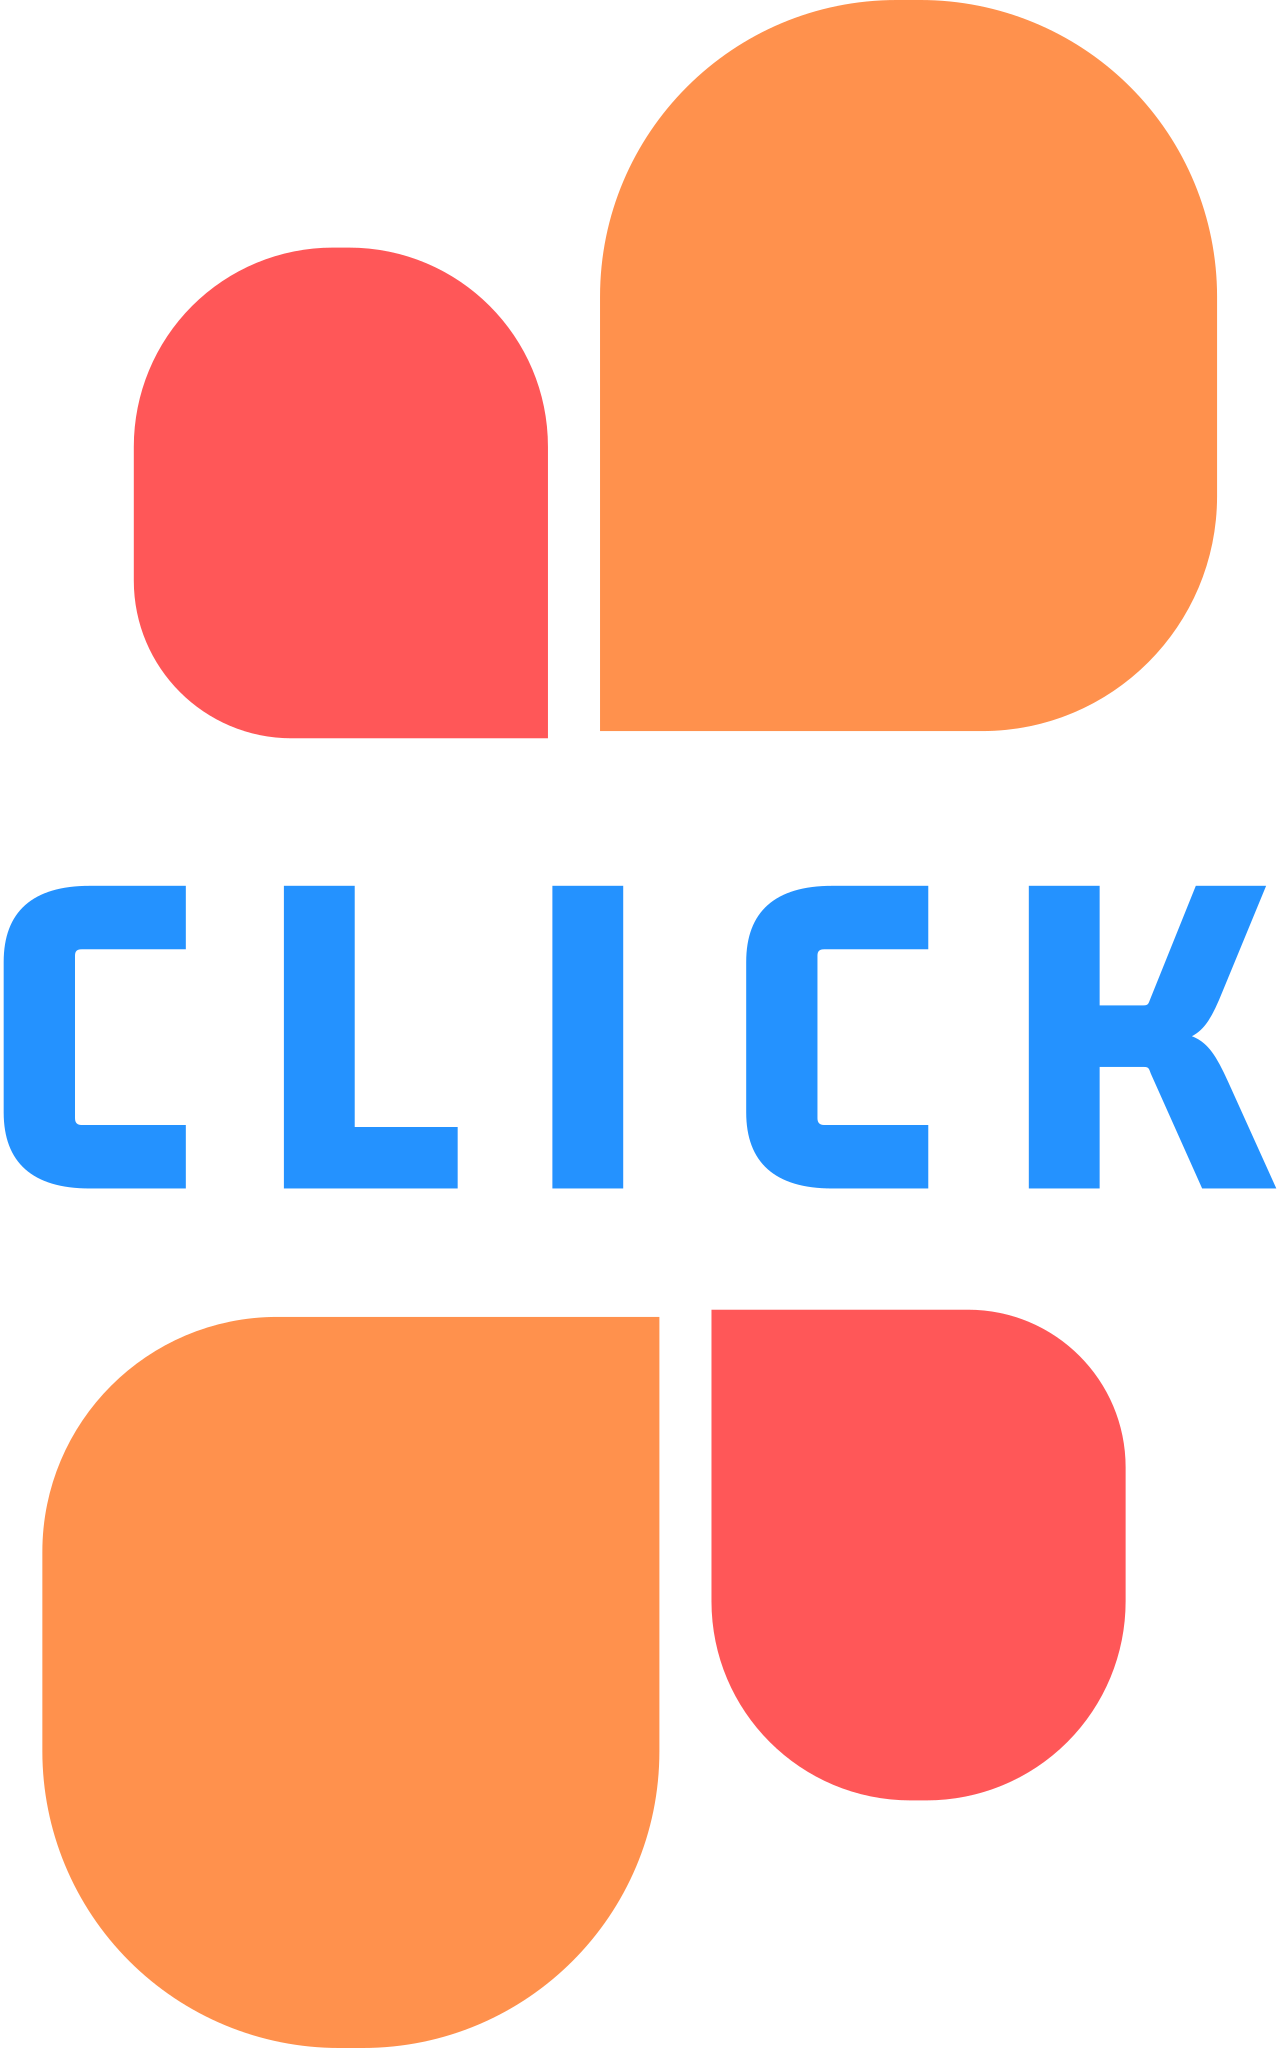 CLICK Logo